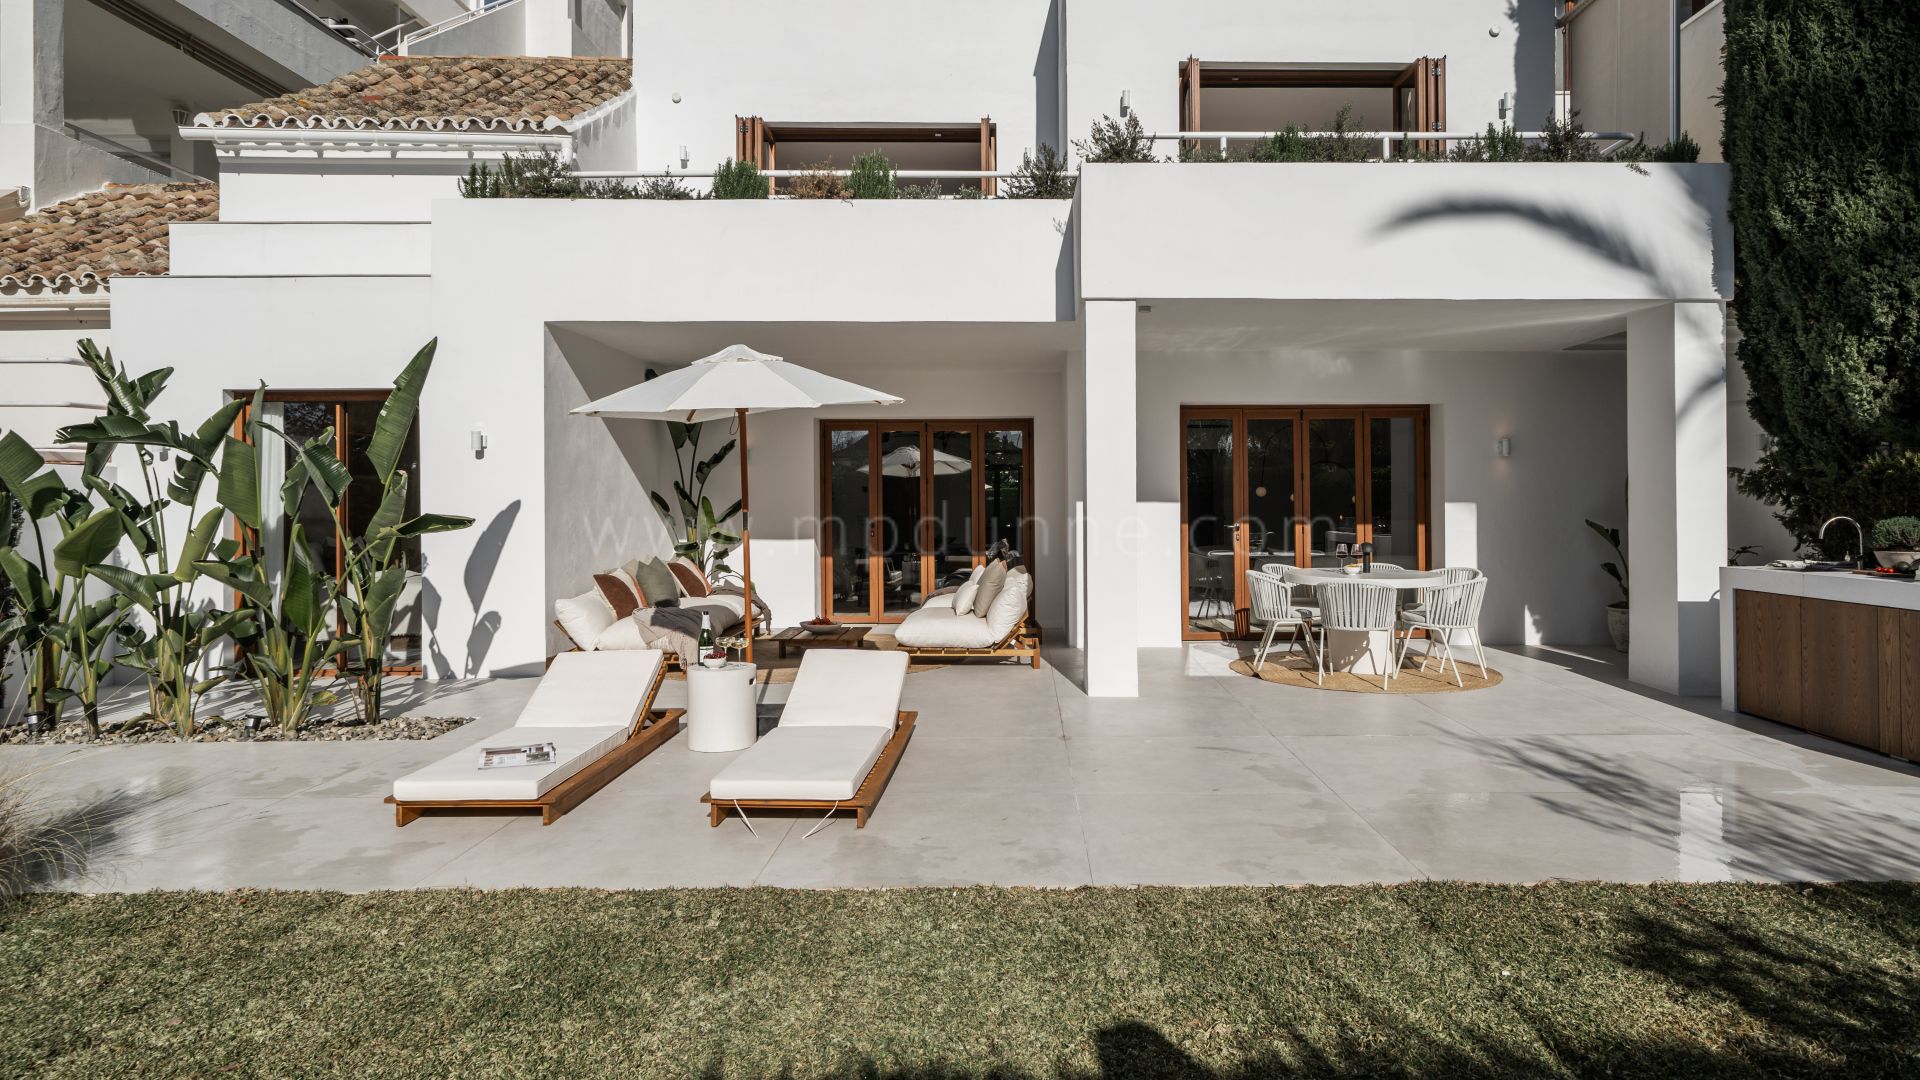 Casa adosada reformada de estilo escandinavo con jardín privado en Nueva Andalucía